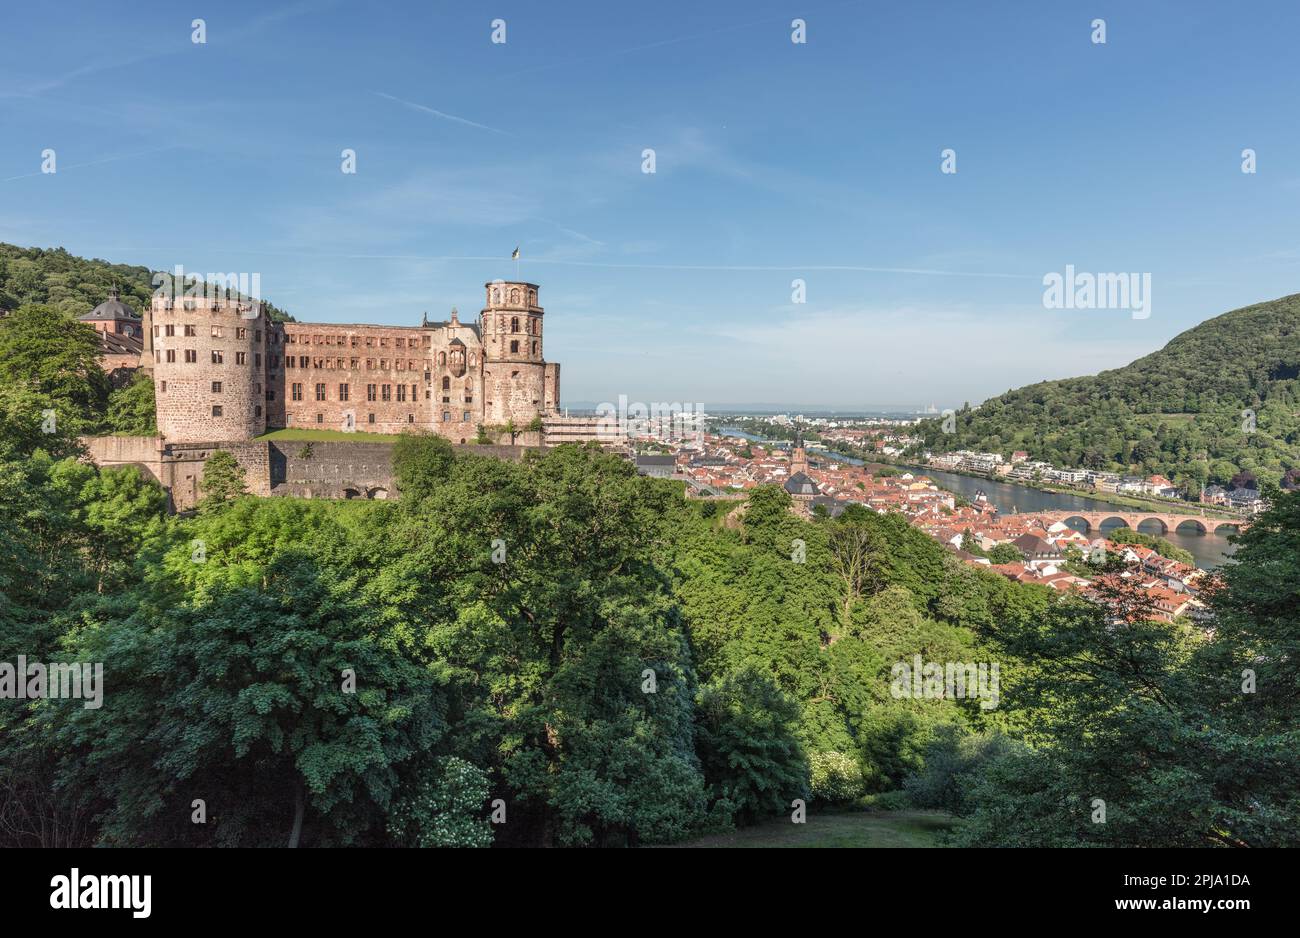 Il Castello di Heidelberg, sul colle di Konigstuhl, un edificio rinascimentale gotico del XIII secolo nella valle del Neckar, si affaccia sulla città Vecchia e sul fiume Neckar. Heidelberg. Foto Stock